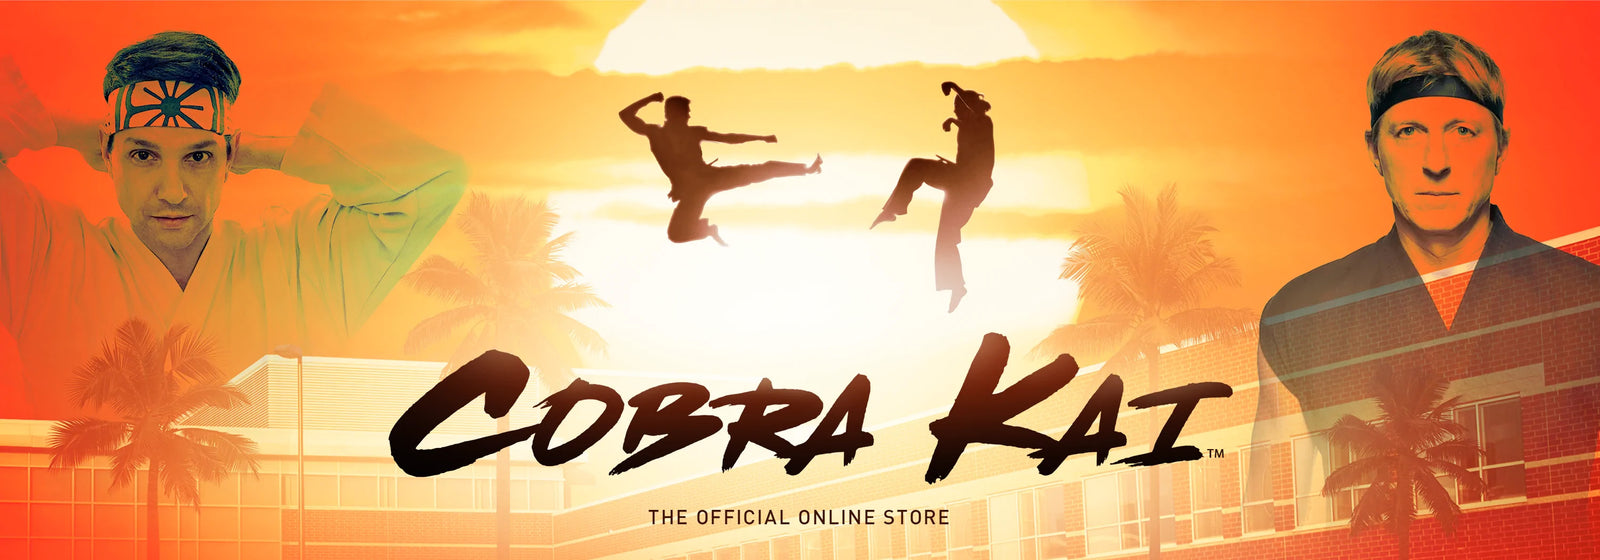 Cobra Kai and The Karate Kid Store – Cobra Kai Store